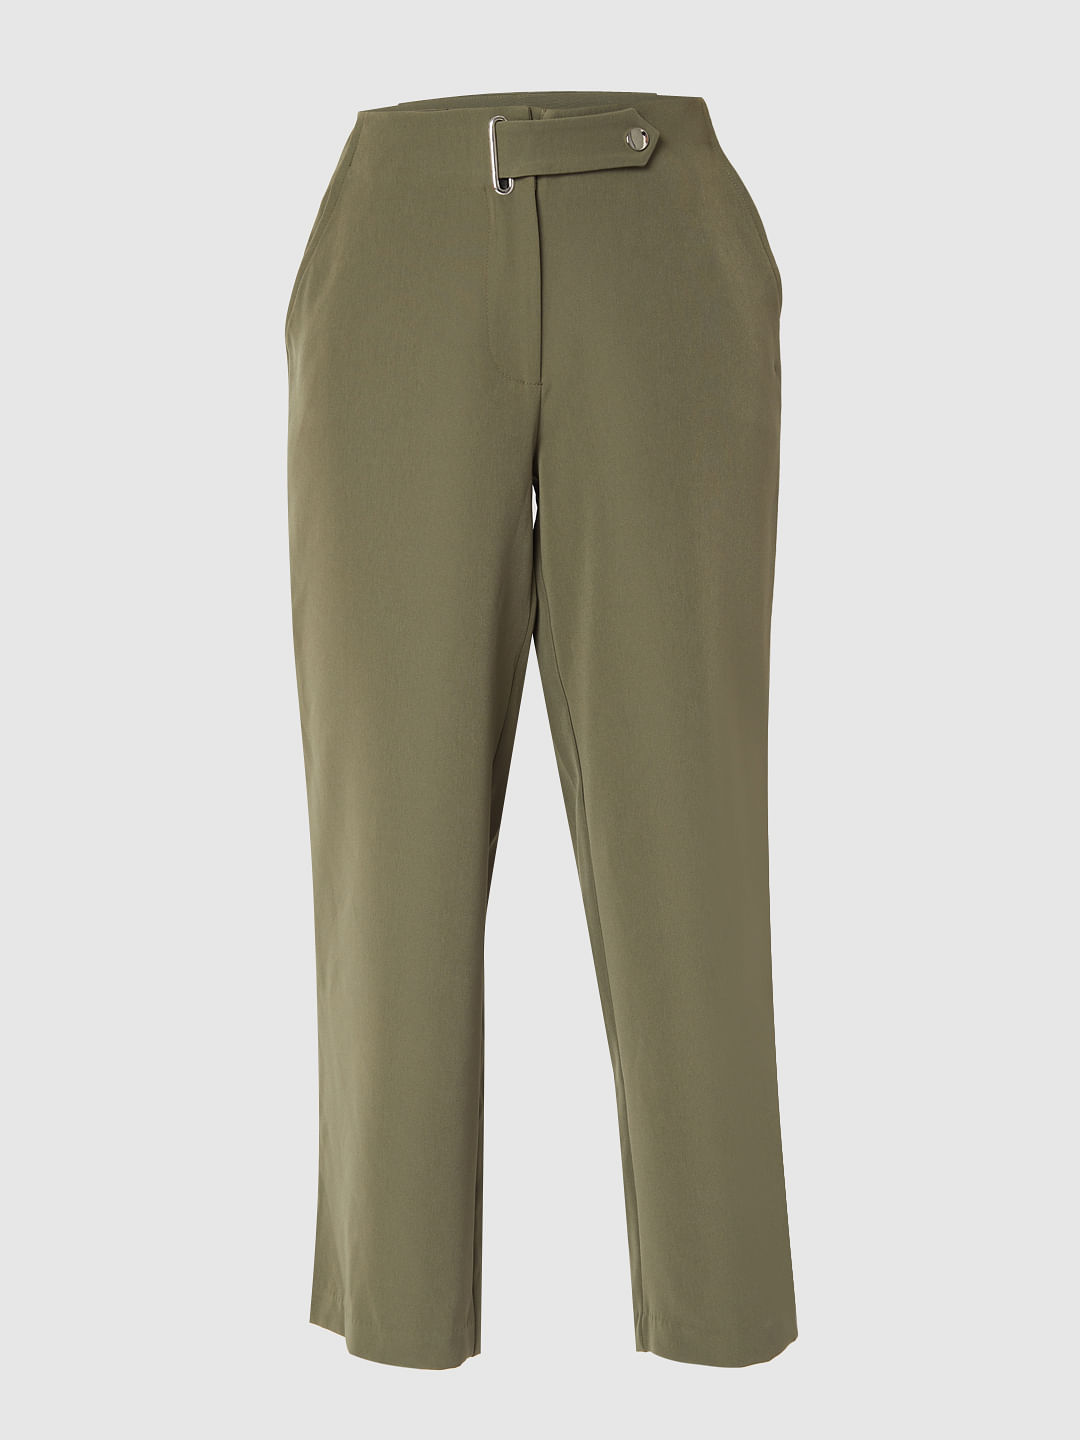 Sondrio - Green Solaro - High Rise Trouser | SPIER & MACKAY